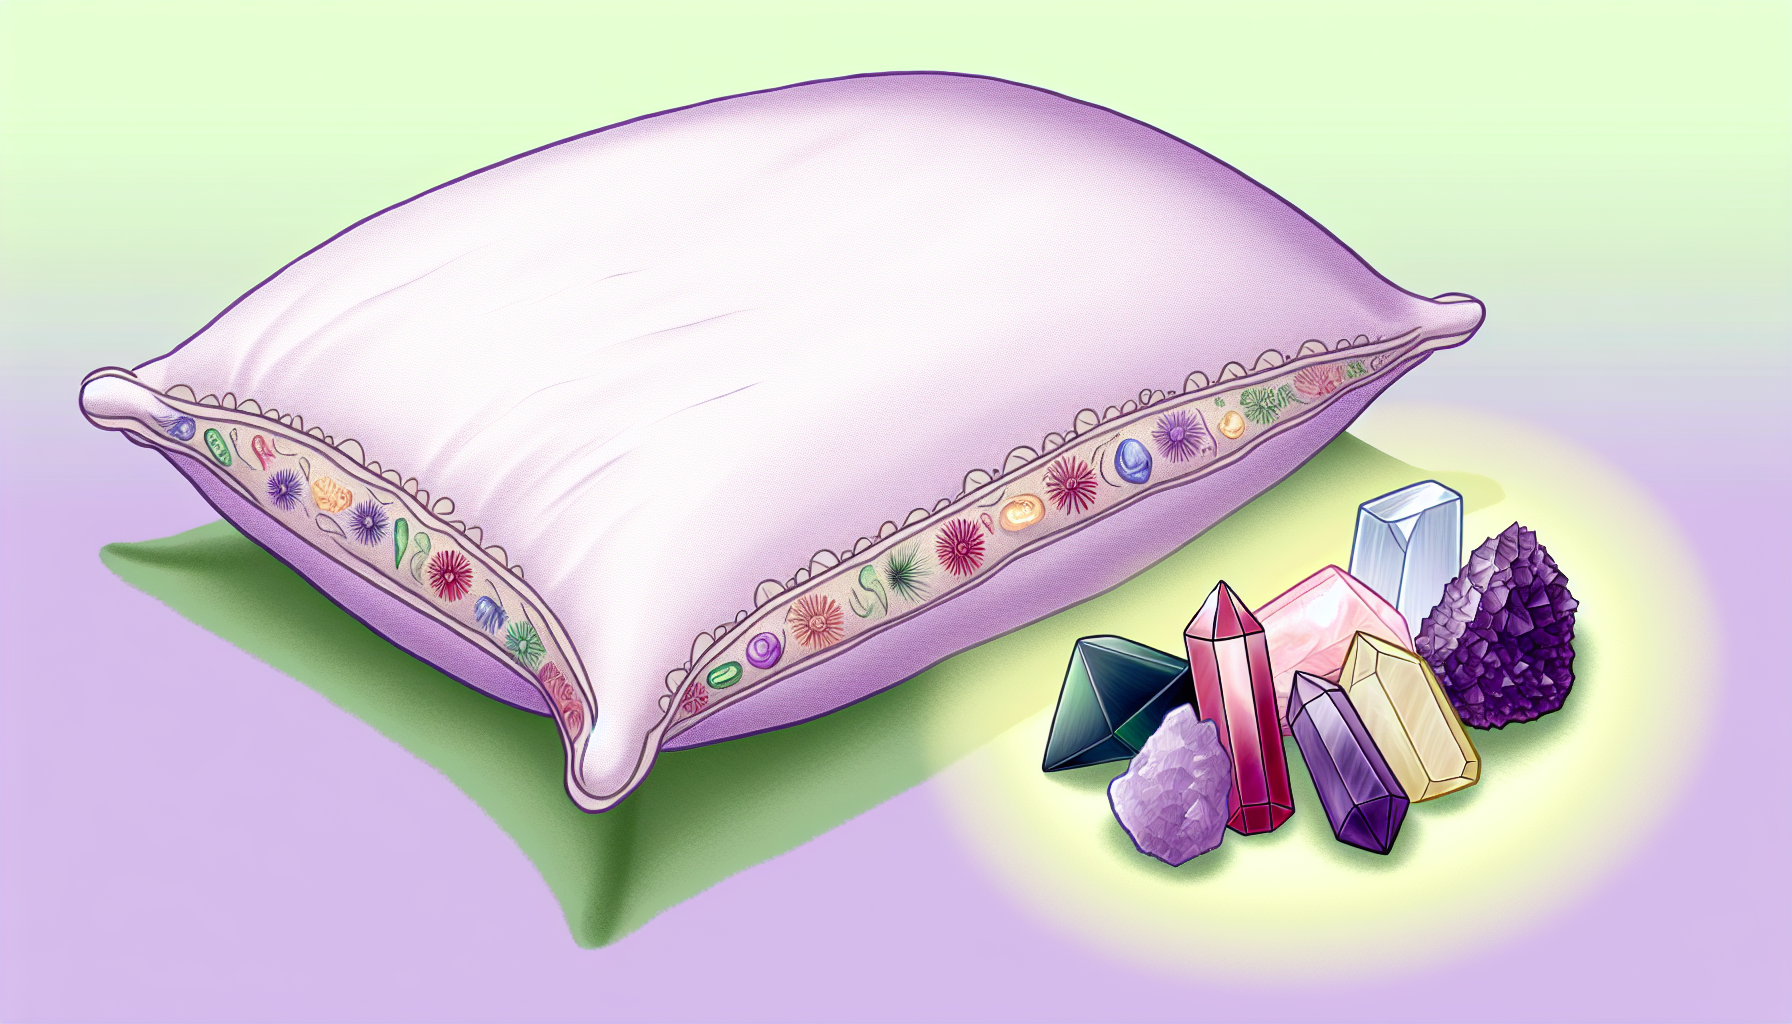 Crystals arranged under a pillow